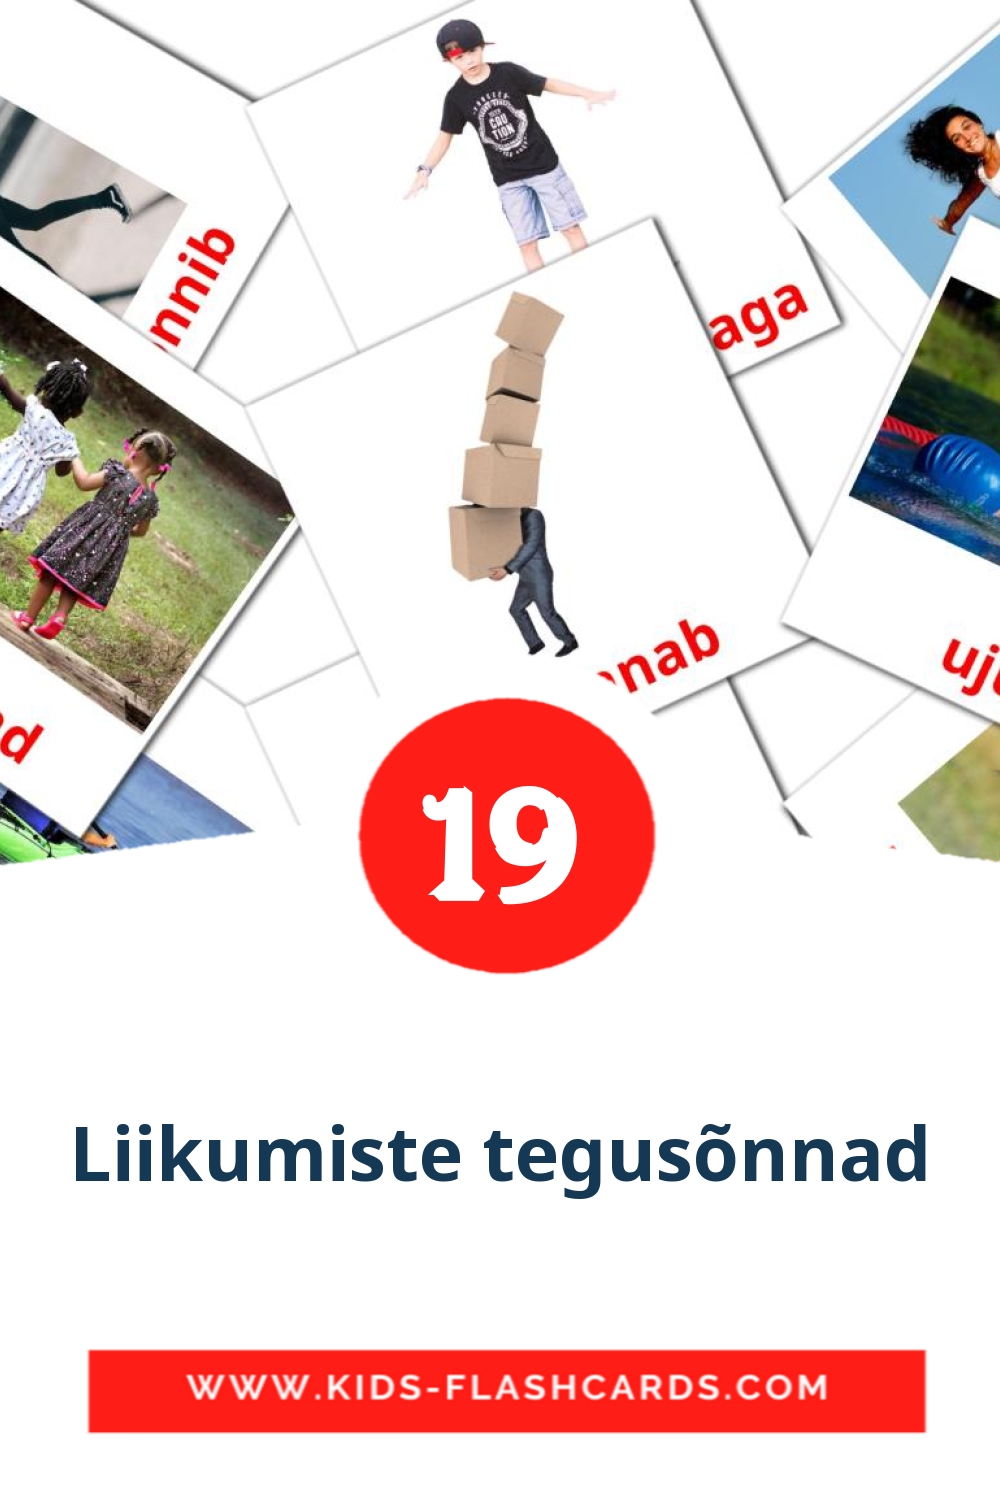 Liikumiste tegusõnnad на эстонском для Детского Сада (19 карточек)